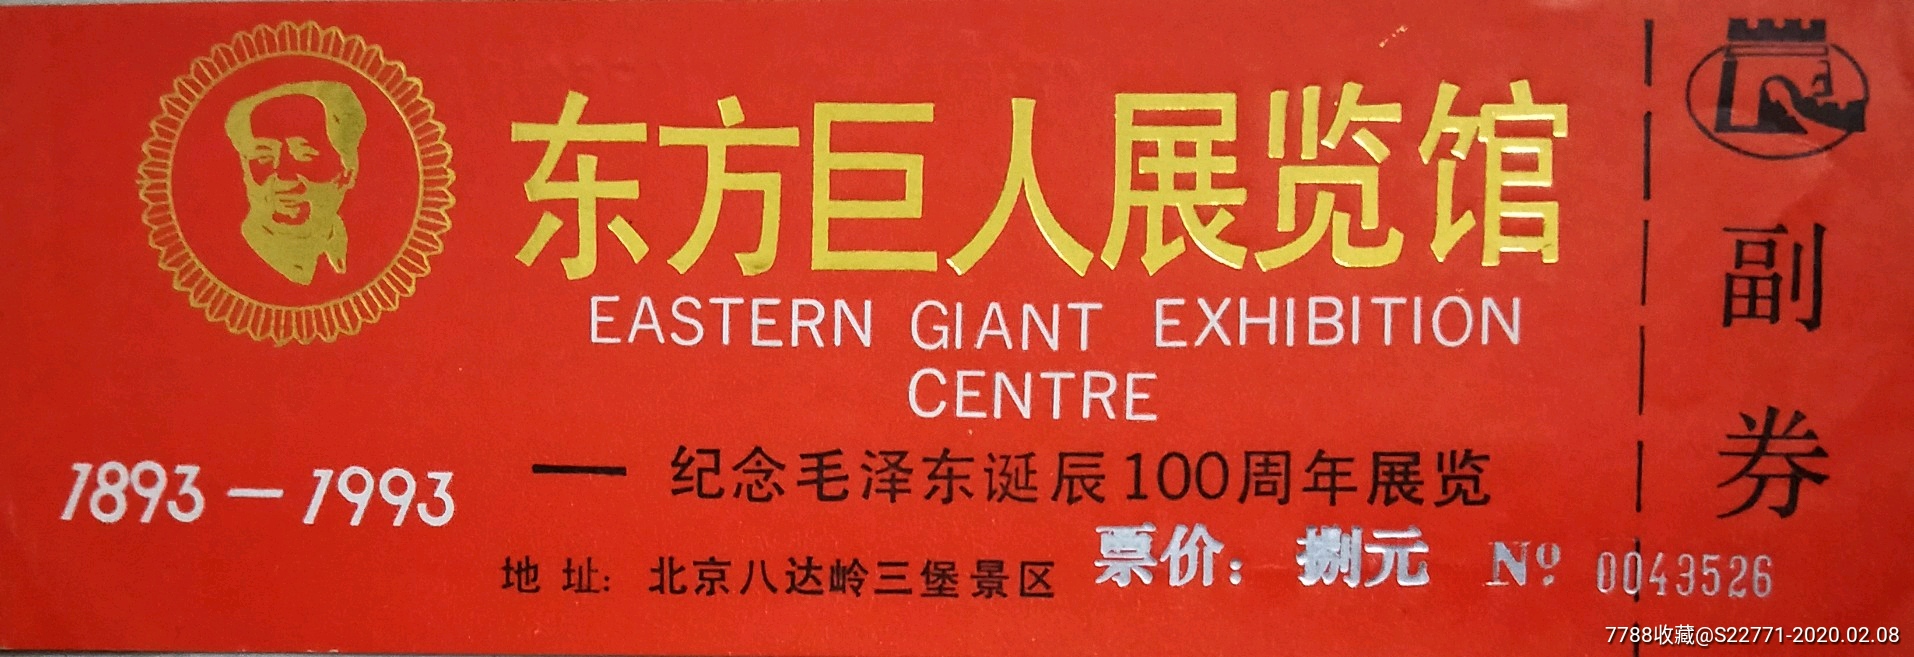 广州东方博物馆门票图片